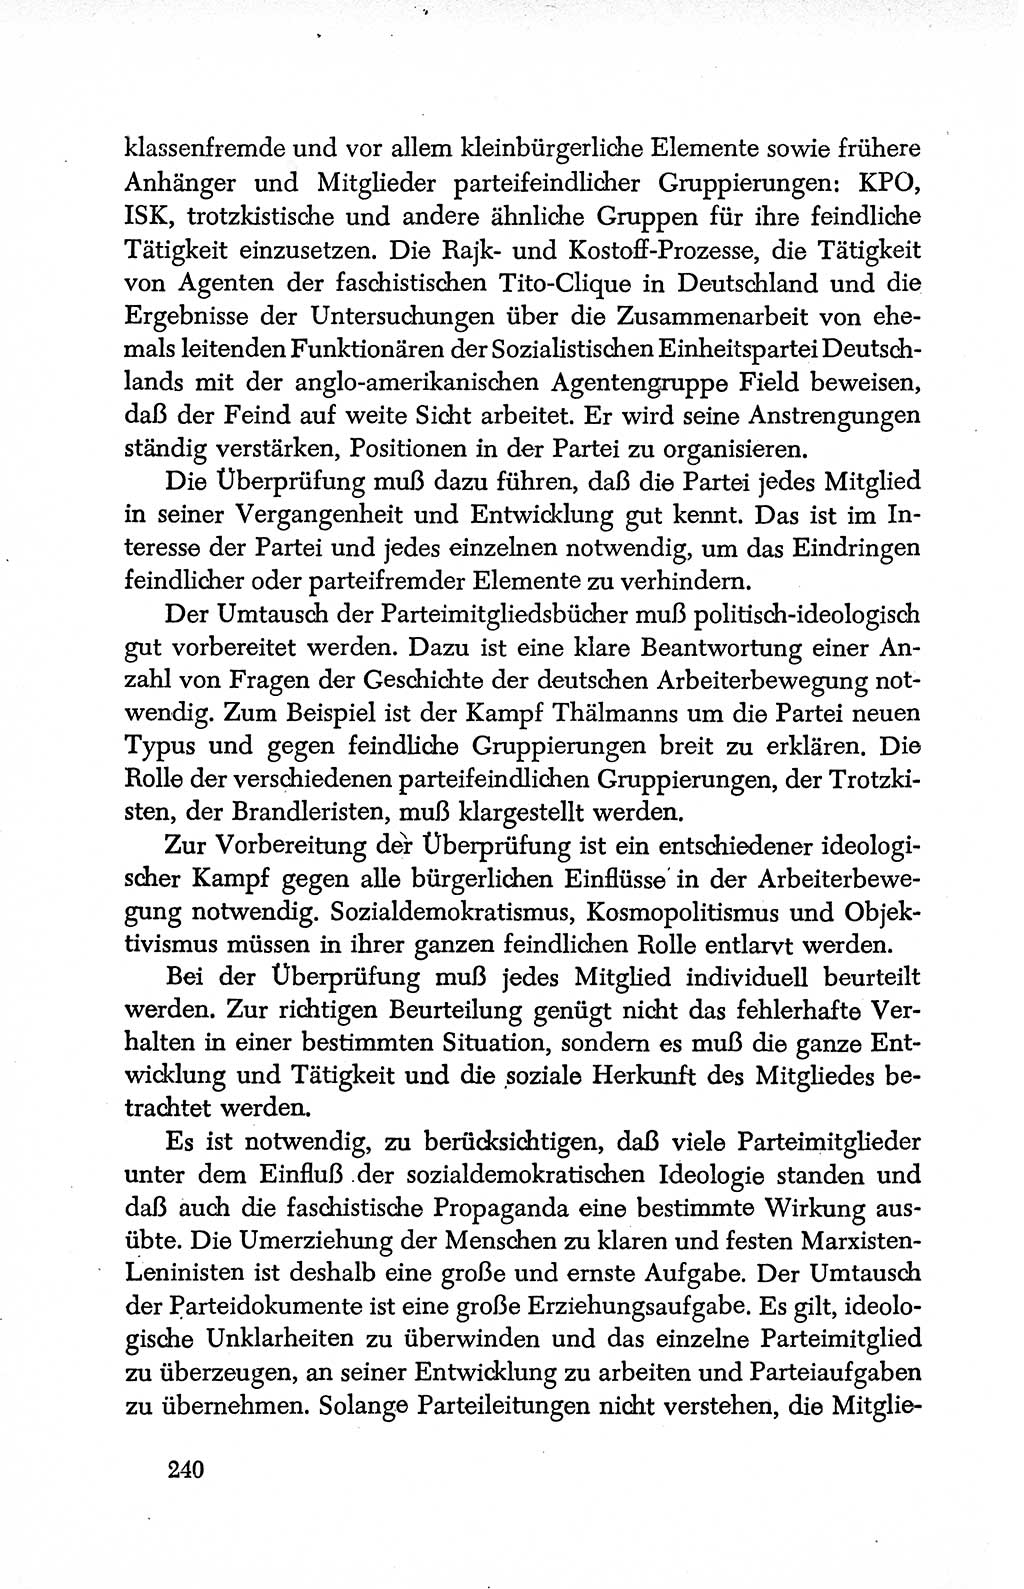 Dokumente der Sozialistischen Einheitspartei Deutschlands (SED) [Deutsche Demokratische Republik (DDR)] 1950-1952, Seite 240 (Dok. SED DDR 1950-1952, S. 240)